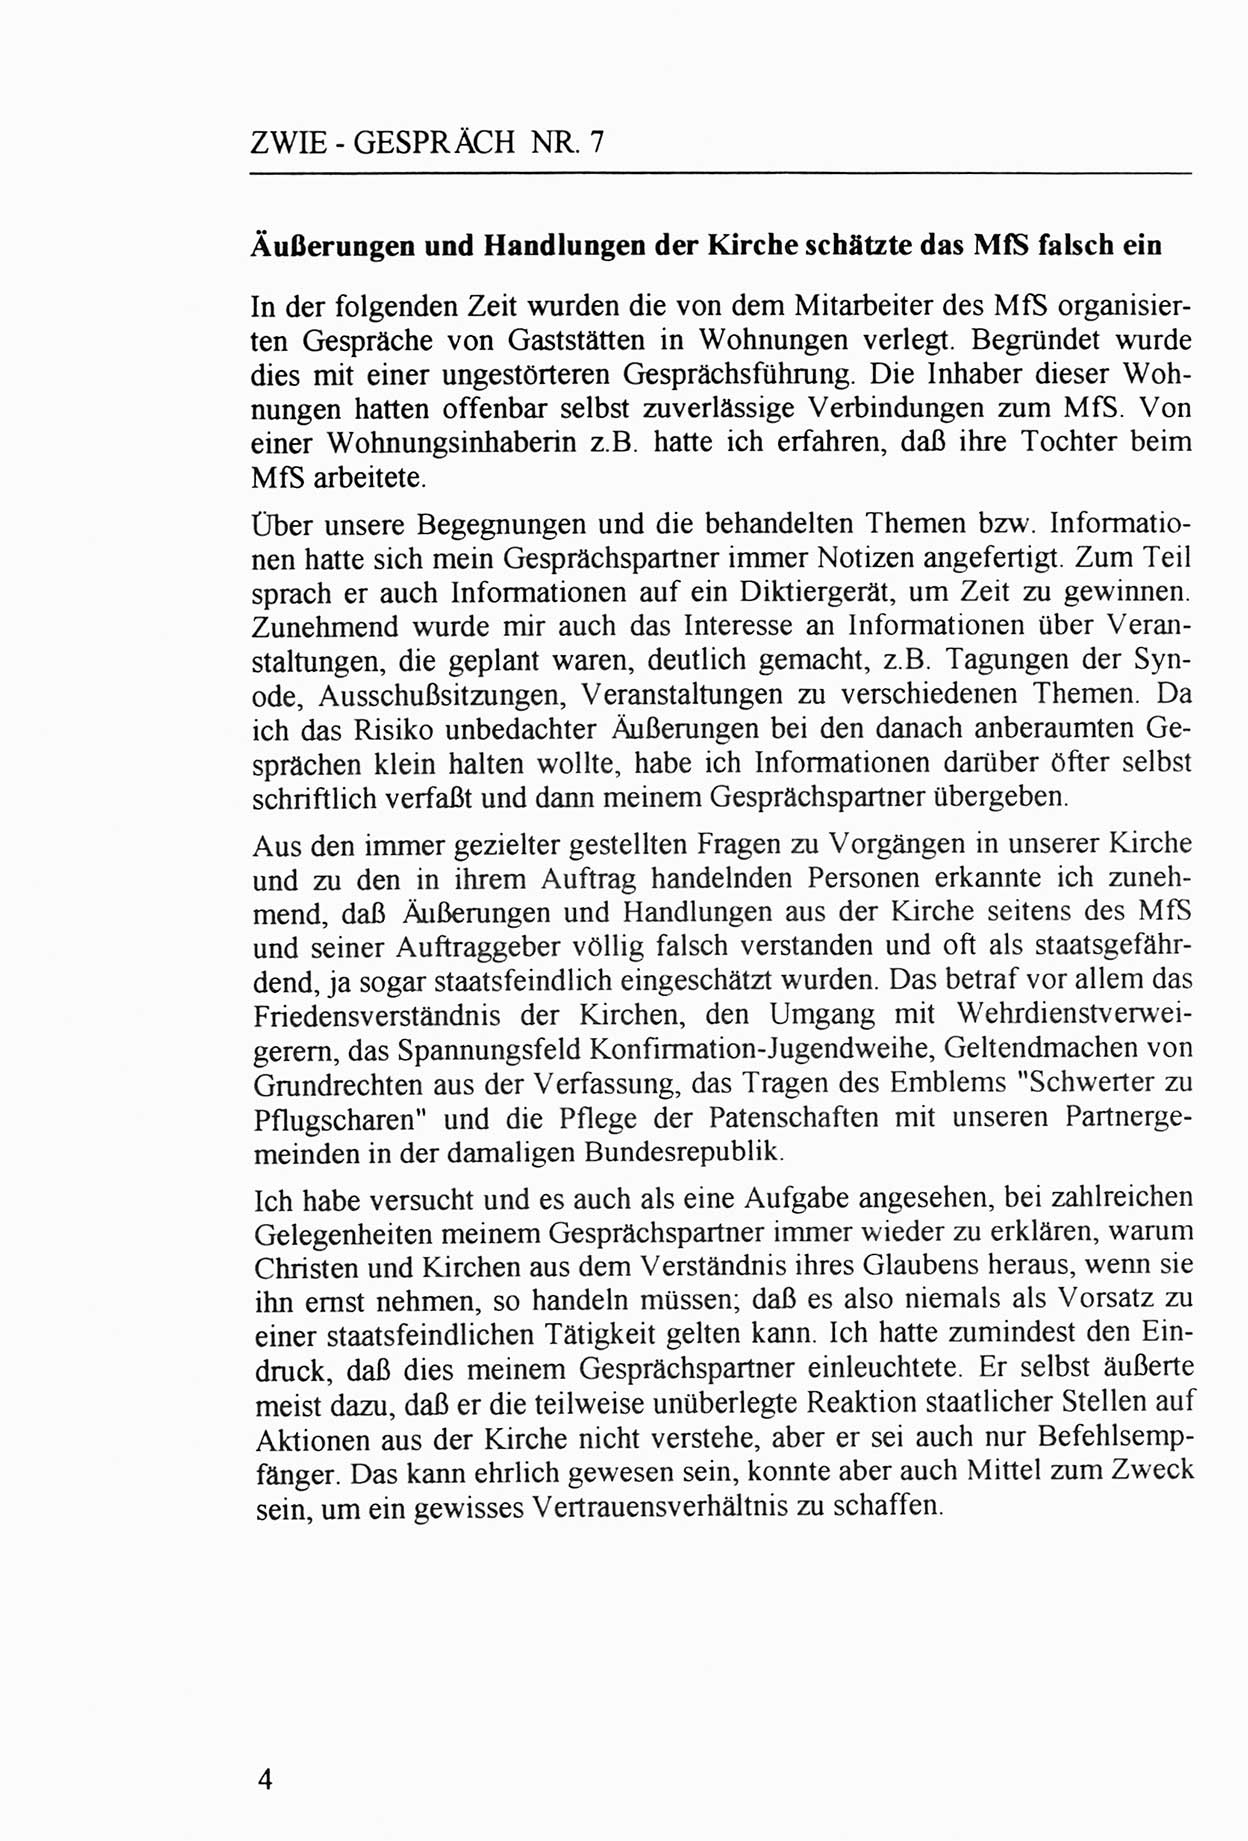 Zwie-Gespräch, Beiträge zur Aufarbeitung der Staatssicherheits-Vergangenheit [Deutsche Demokratische Republik (DDR)], Ausgabe Nr. 7, Berlin 1992, Seite 4 (Zwie-Gespr. Ausg. 7 1992, S. 4)